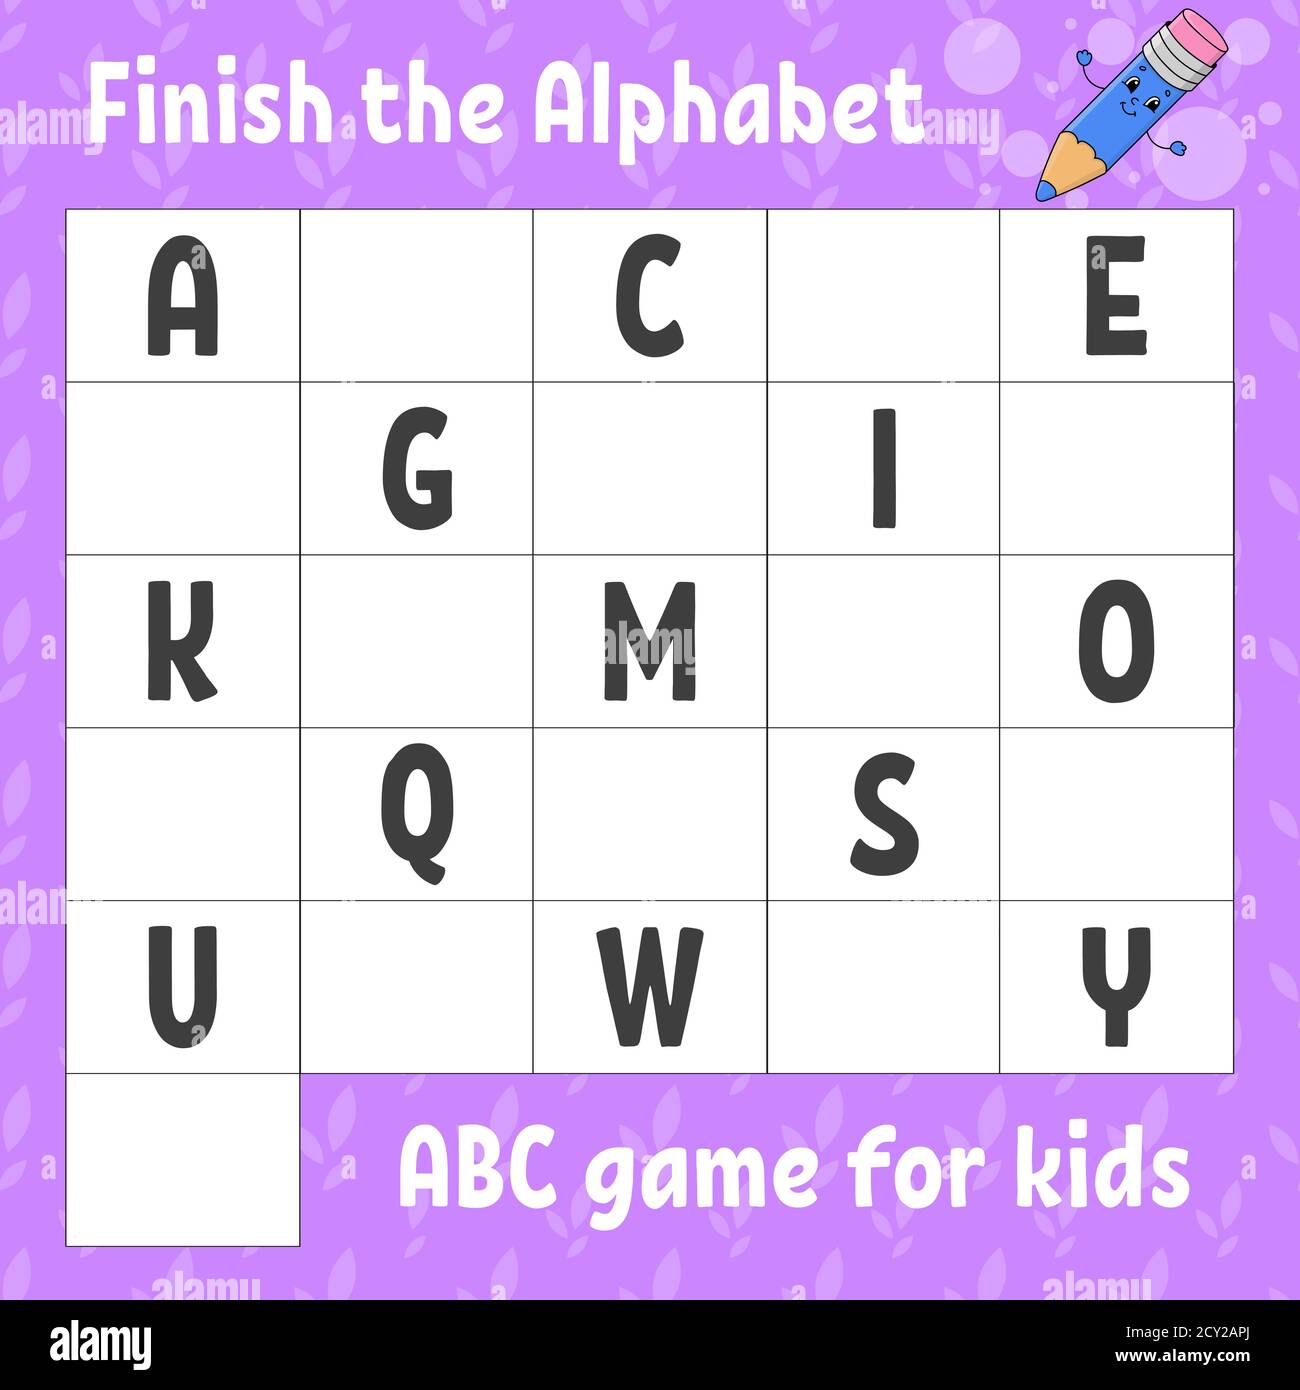 Das Alphabet fertig stellen. ABC-Spiel für Kinder. Arbeitsblatt zur Entwicklung von Schulungen. Lernspiel für Kinder. Aktivitätsseite Farbe. Stock Vektor